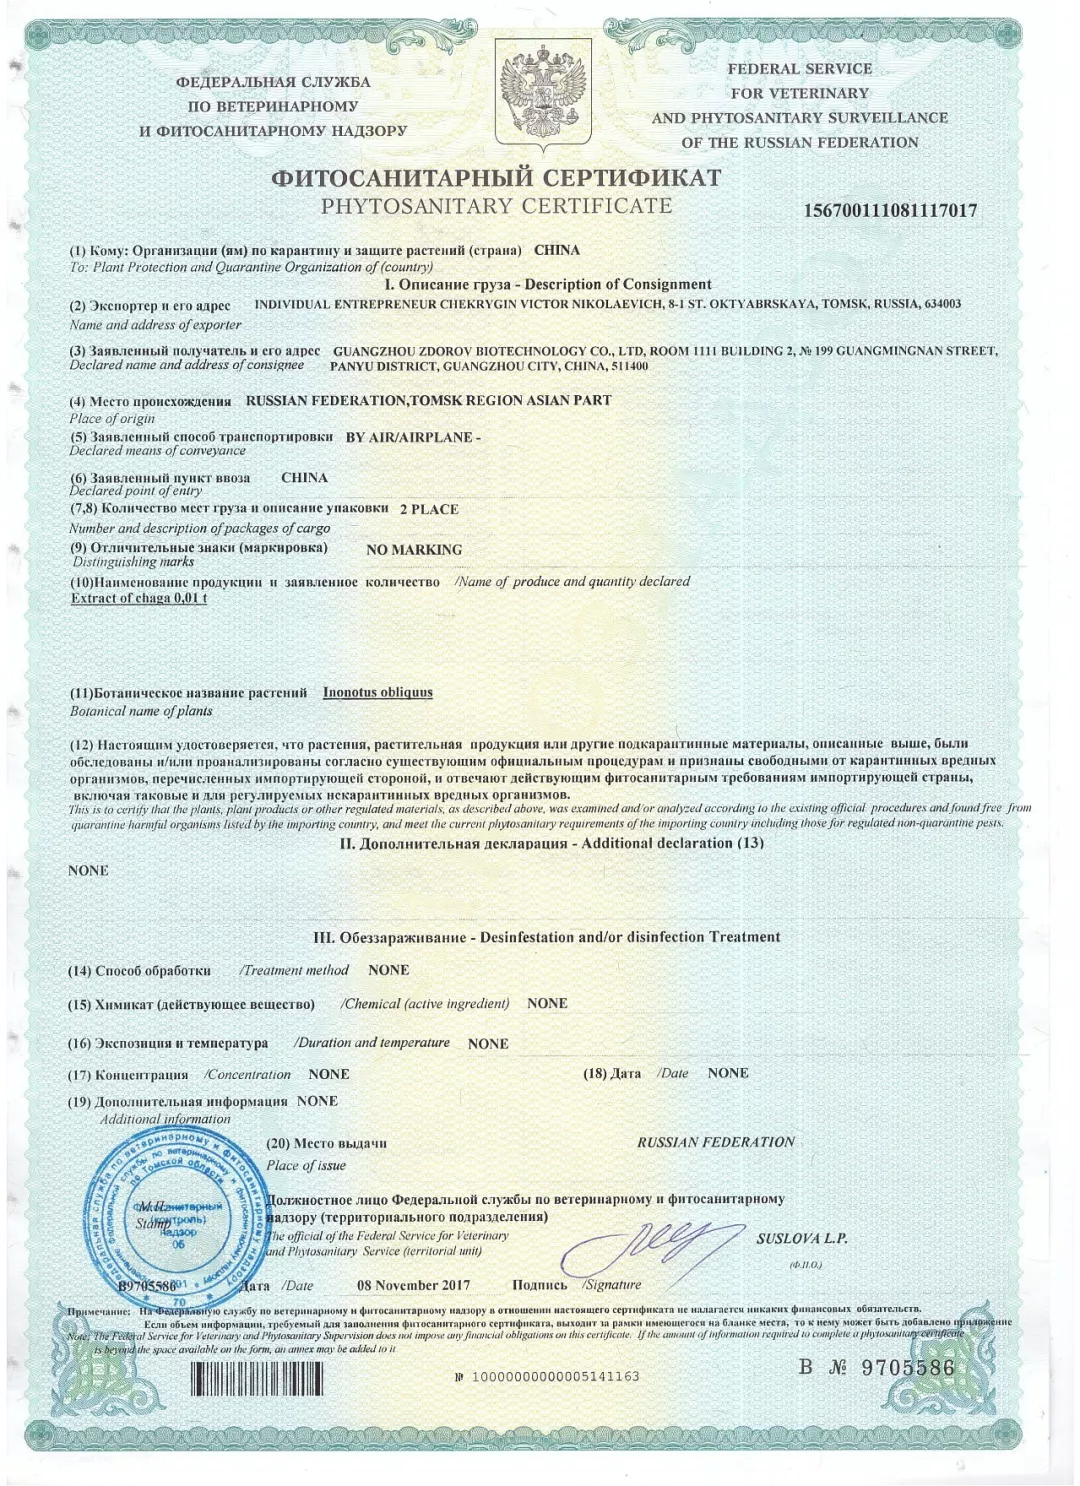 俄罗斯出口植物卫生检疫证书